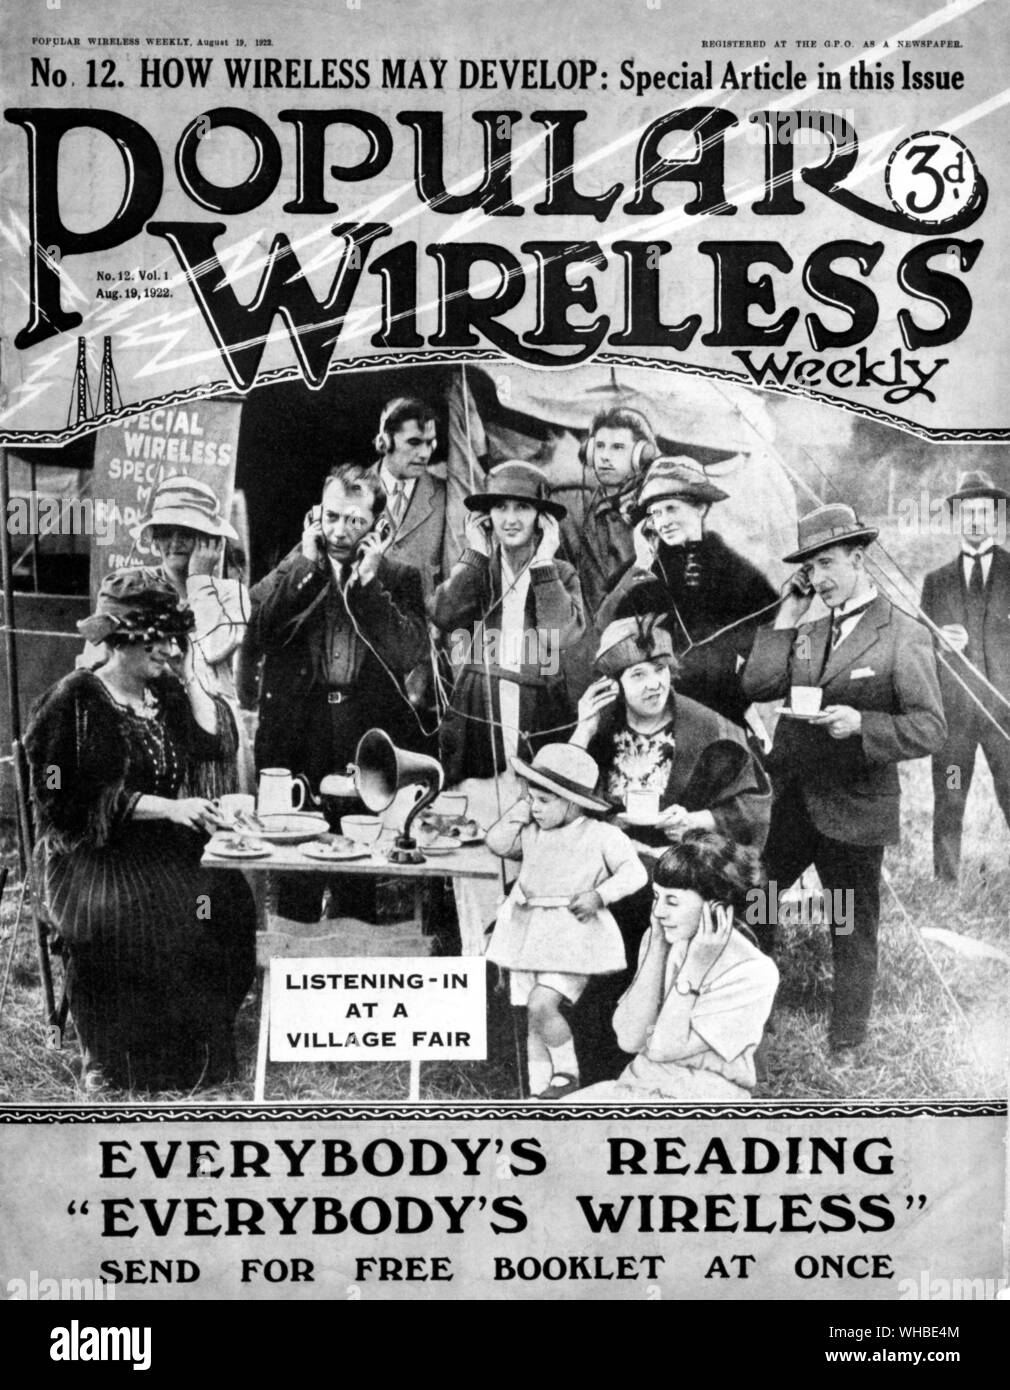 Vordere Abdeckung der populären Wireless Weekly, Nr. 12, Vol. 1 19. August 1922 - Wie drahtlose entwickeln können: Spezielle Artikel in dieser Ausgabe - 3d. (Knapp über 1p in Dezimal Prägung) - Bild zeigt eine Zusammenstellung der Menschen zuhören - in einem Dorf fair.. Stockfoto